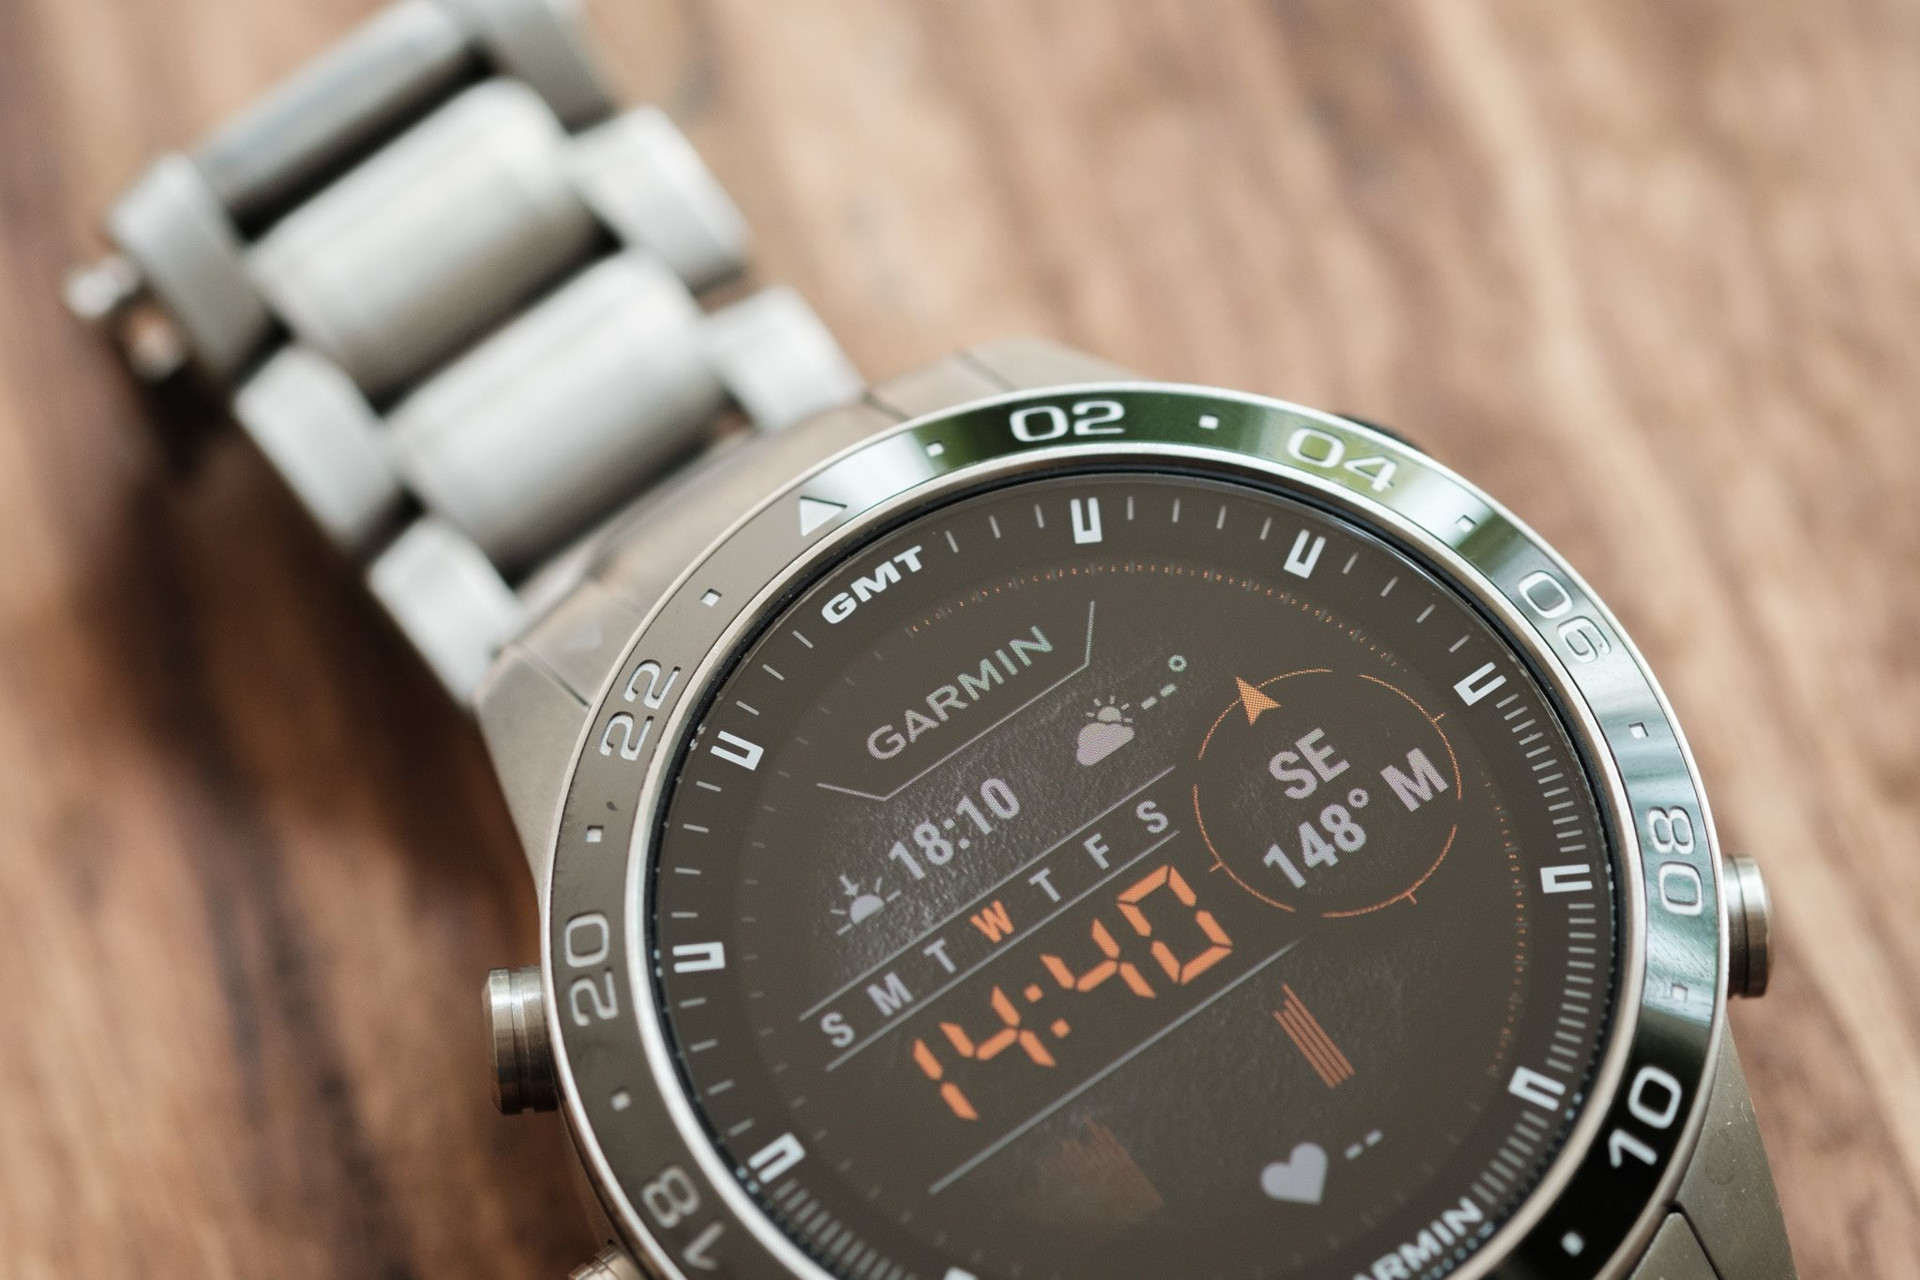 Mẫu đồng hồ Garmin có giá hơn 60 triệu đồng, không dành cho số đông - Ảnh 4.